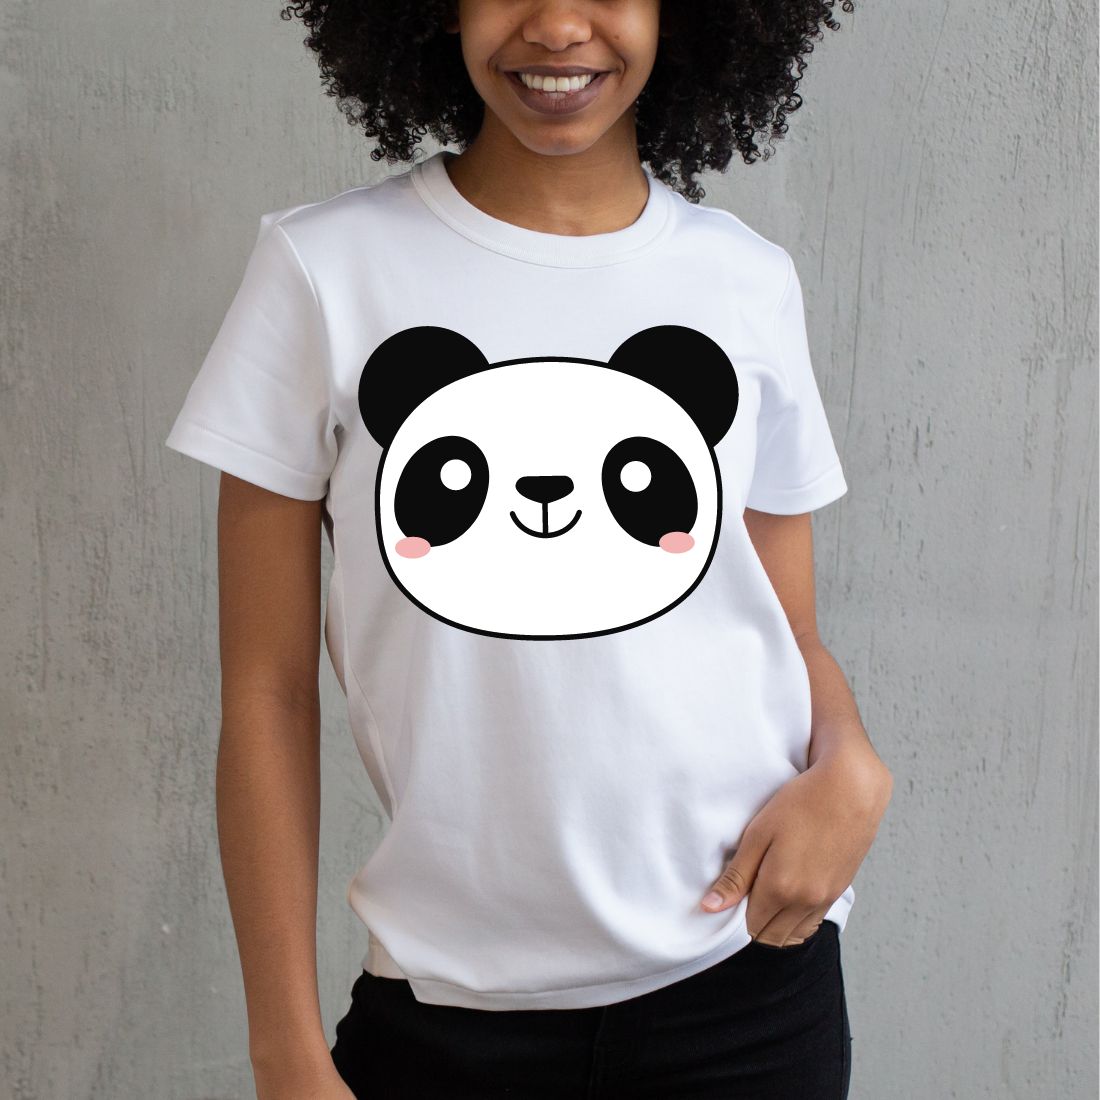 Cute Panda Vector Art preview image.